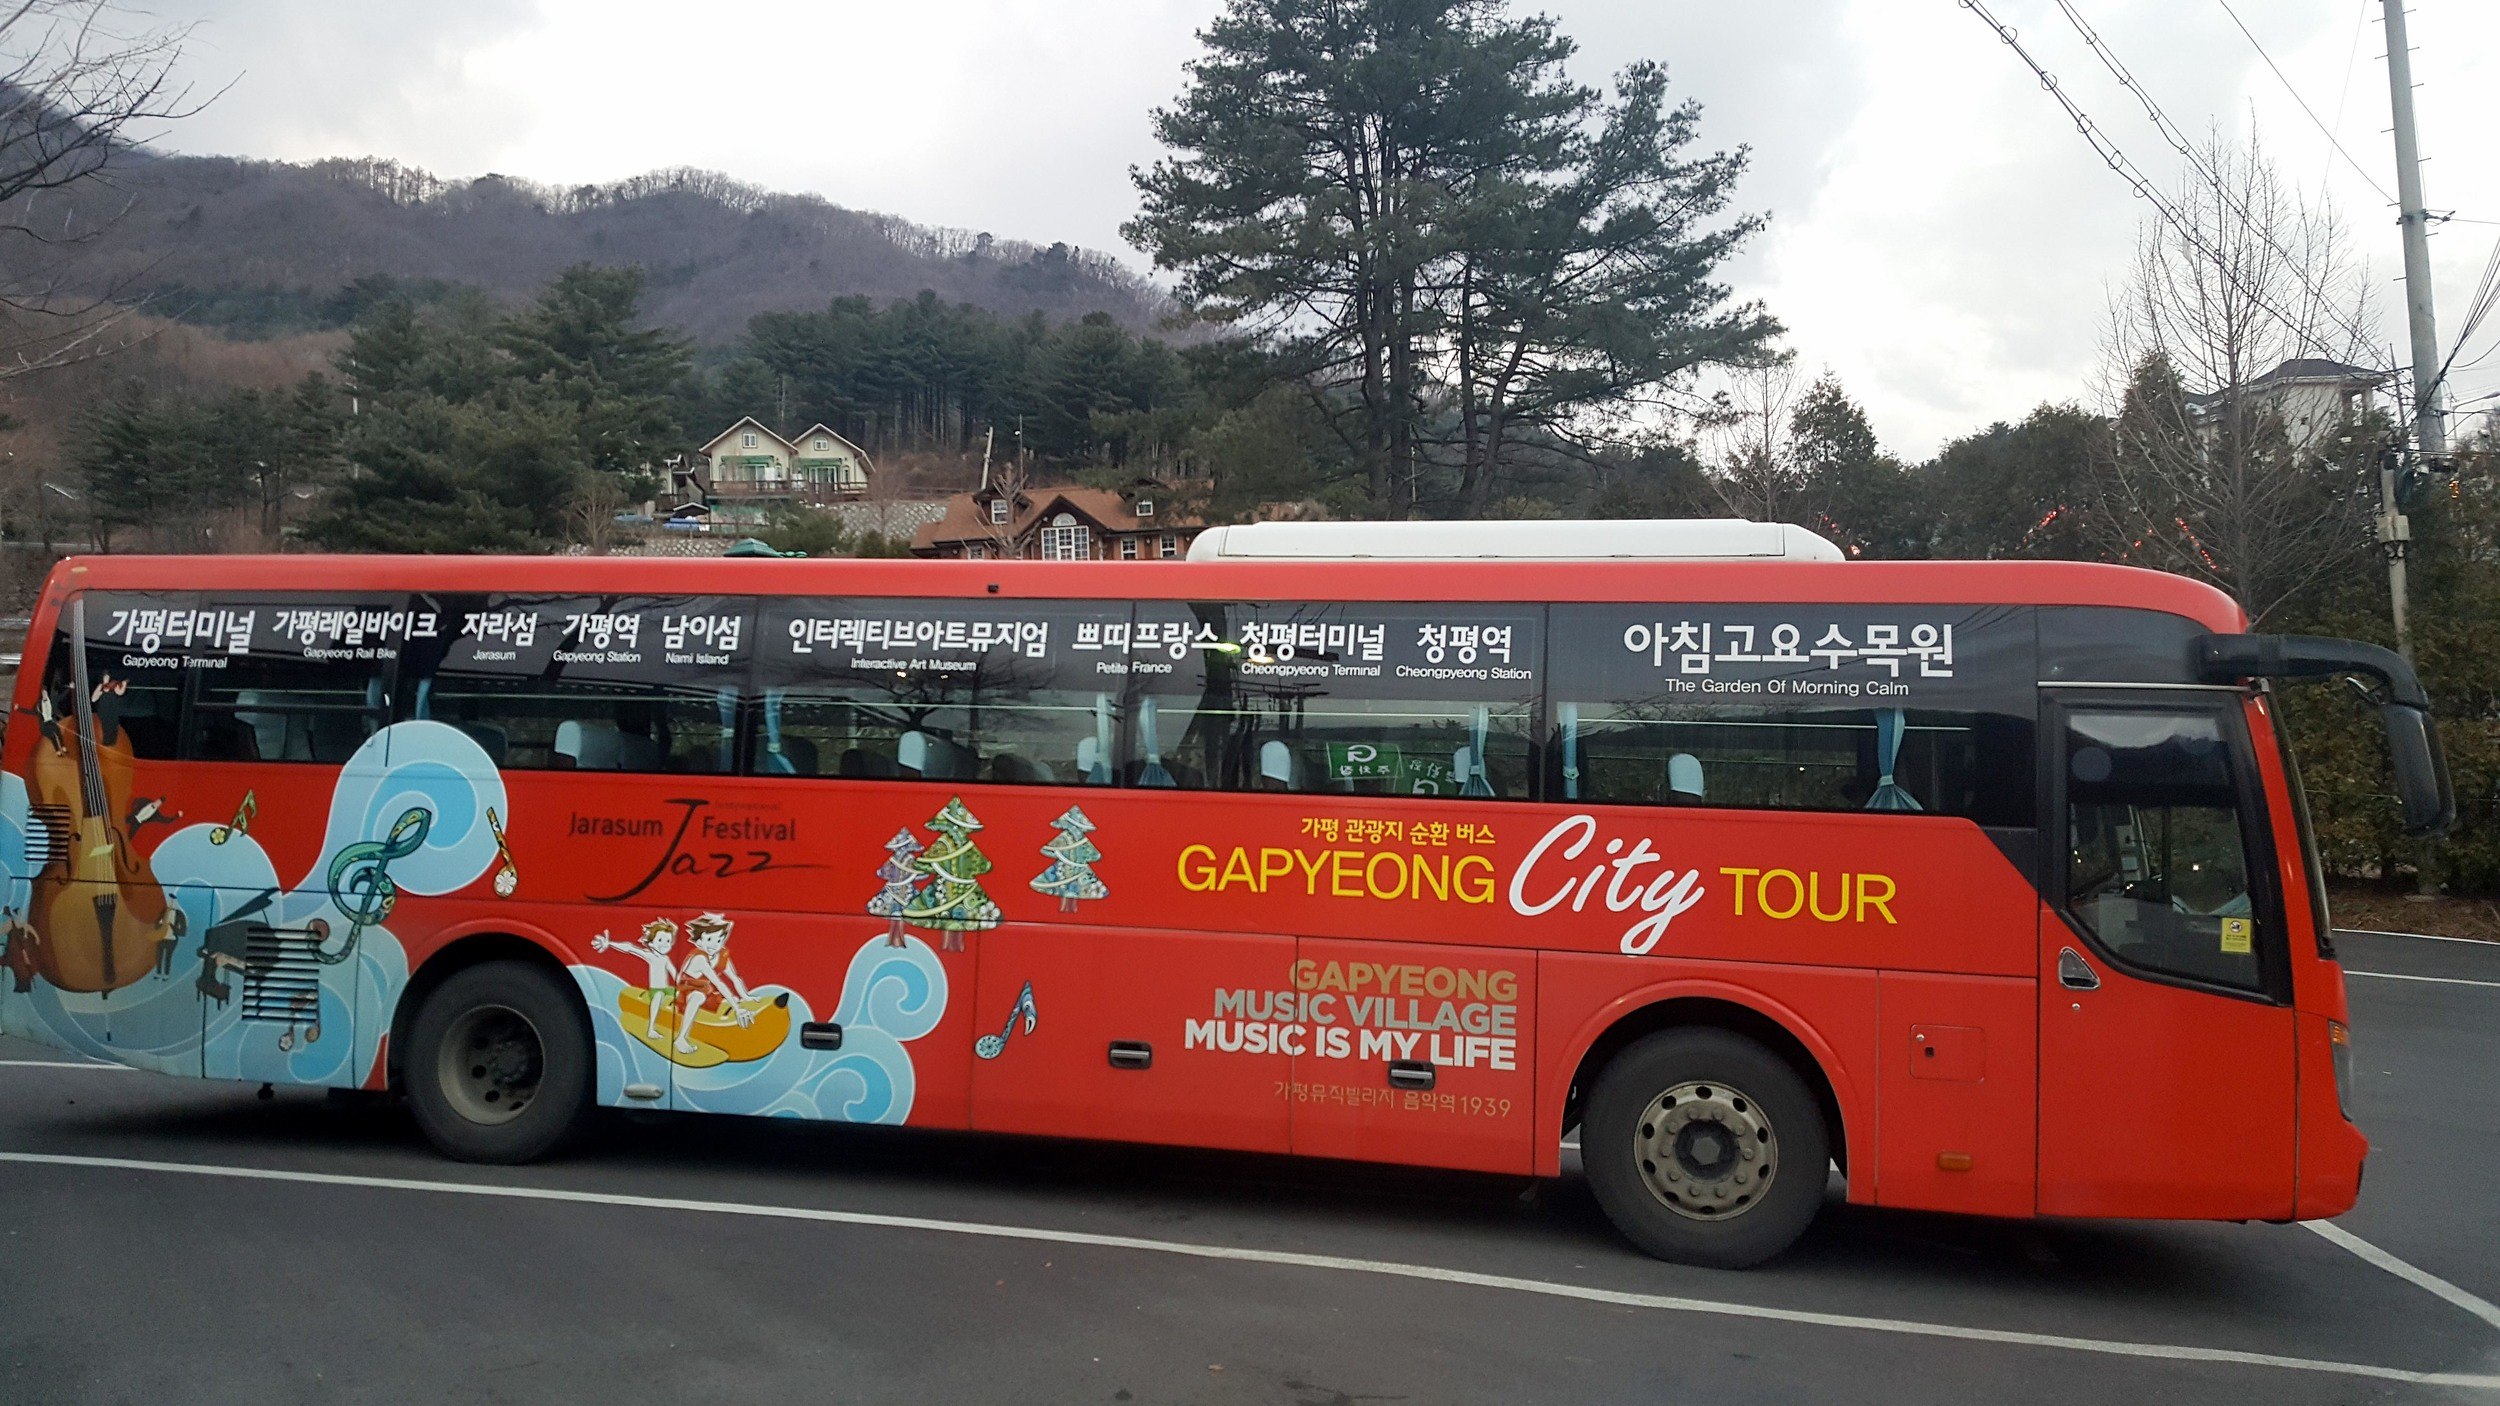 Travel Guide to Nami Island, South Korea How to Go & What to Do